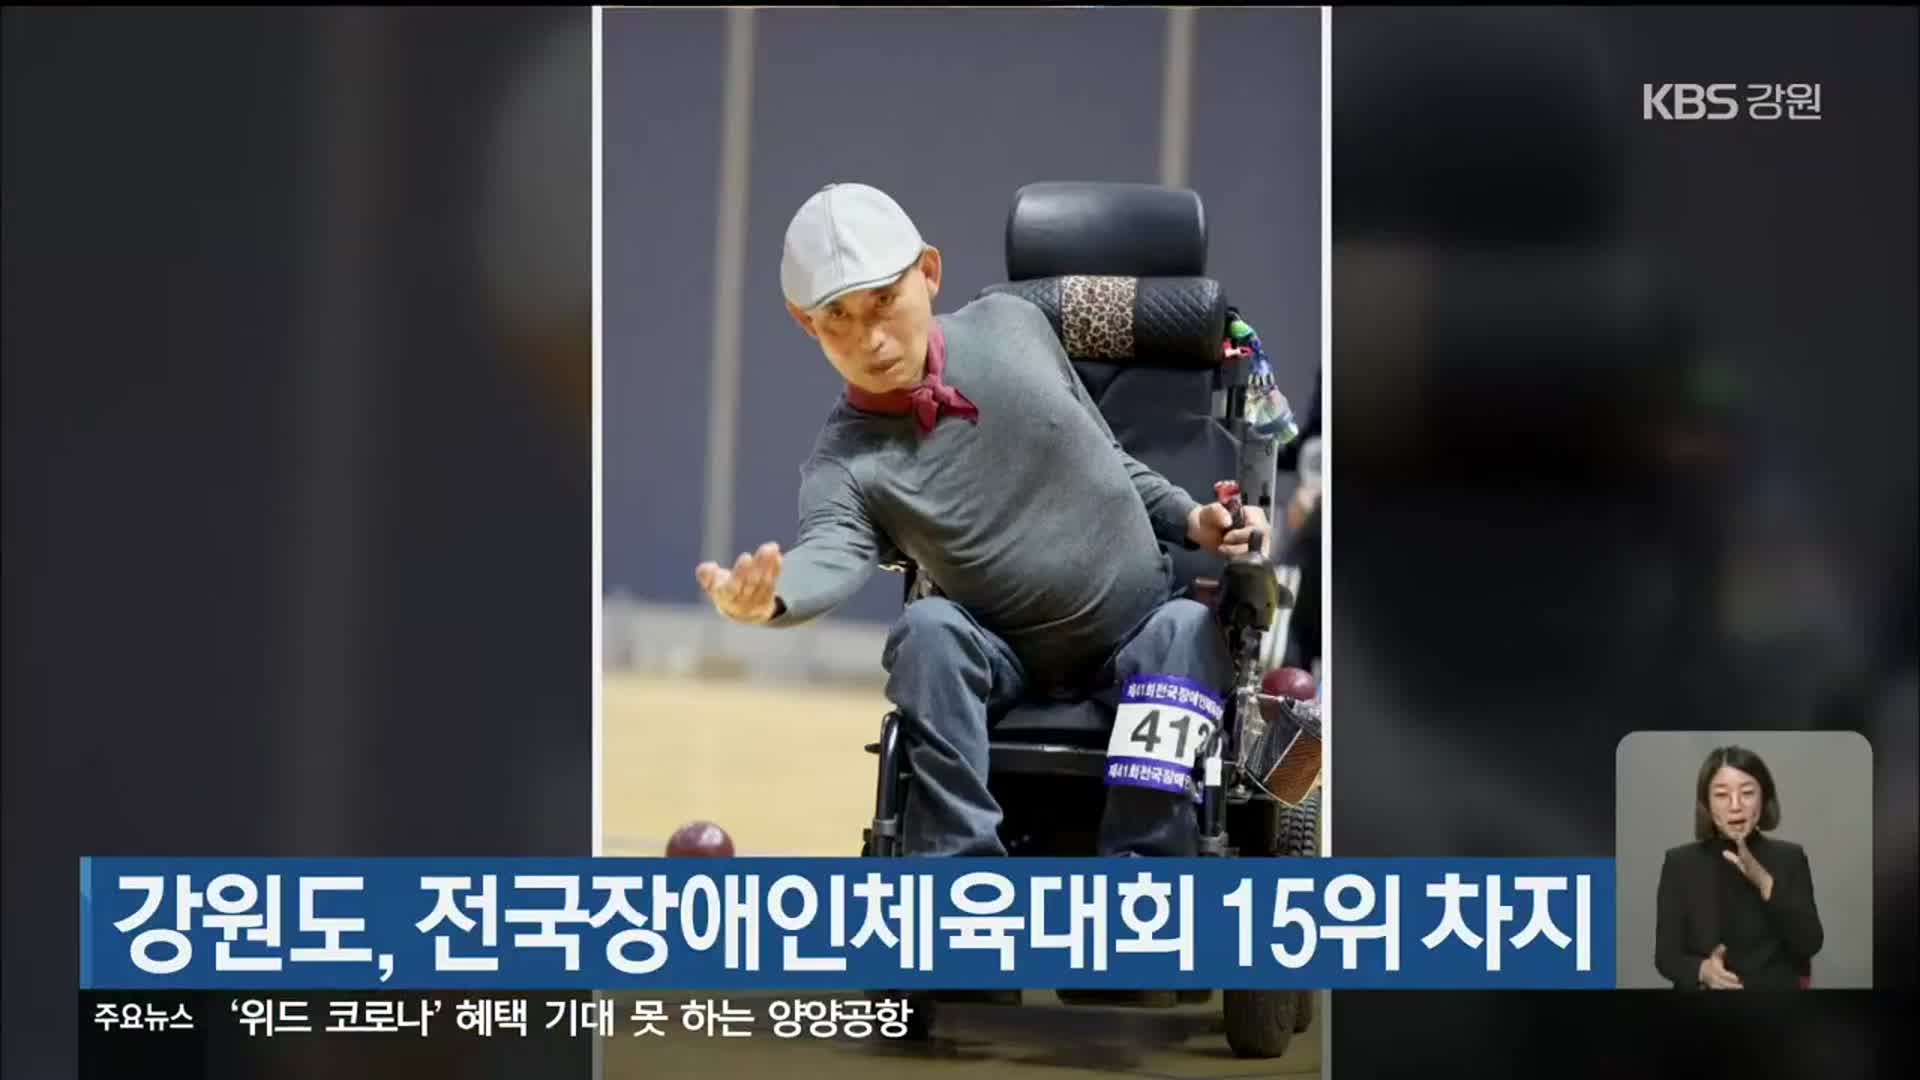 강원도, 전국장애인체육대회 15위 차지